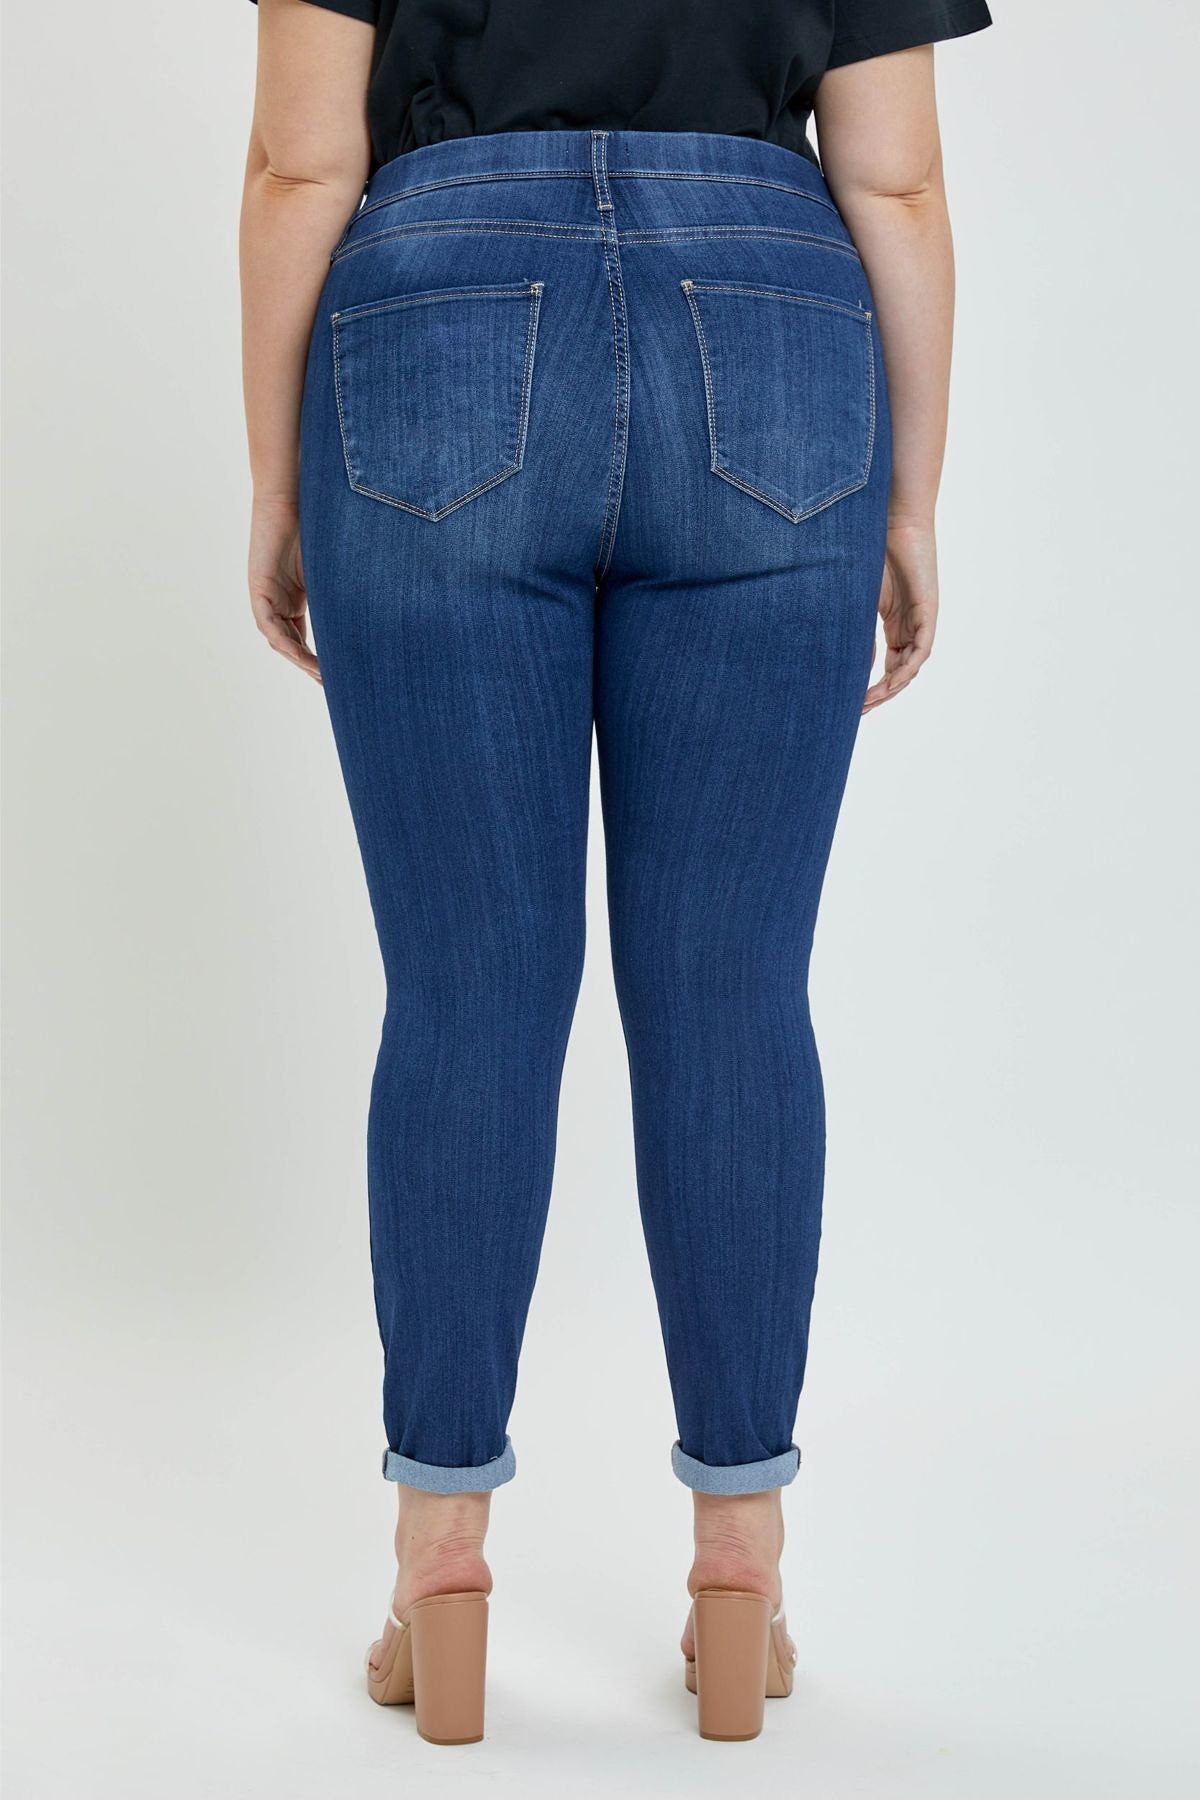 Cello Jeans > Plus Size > #AB76535DKP − LAShowroom.com